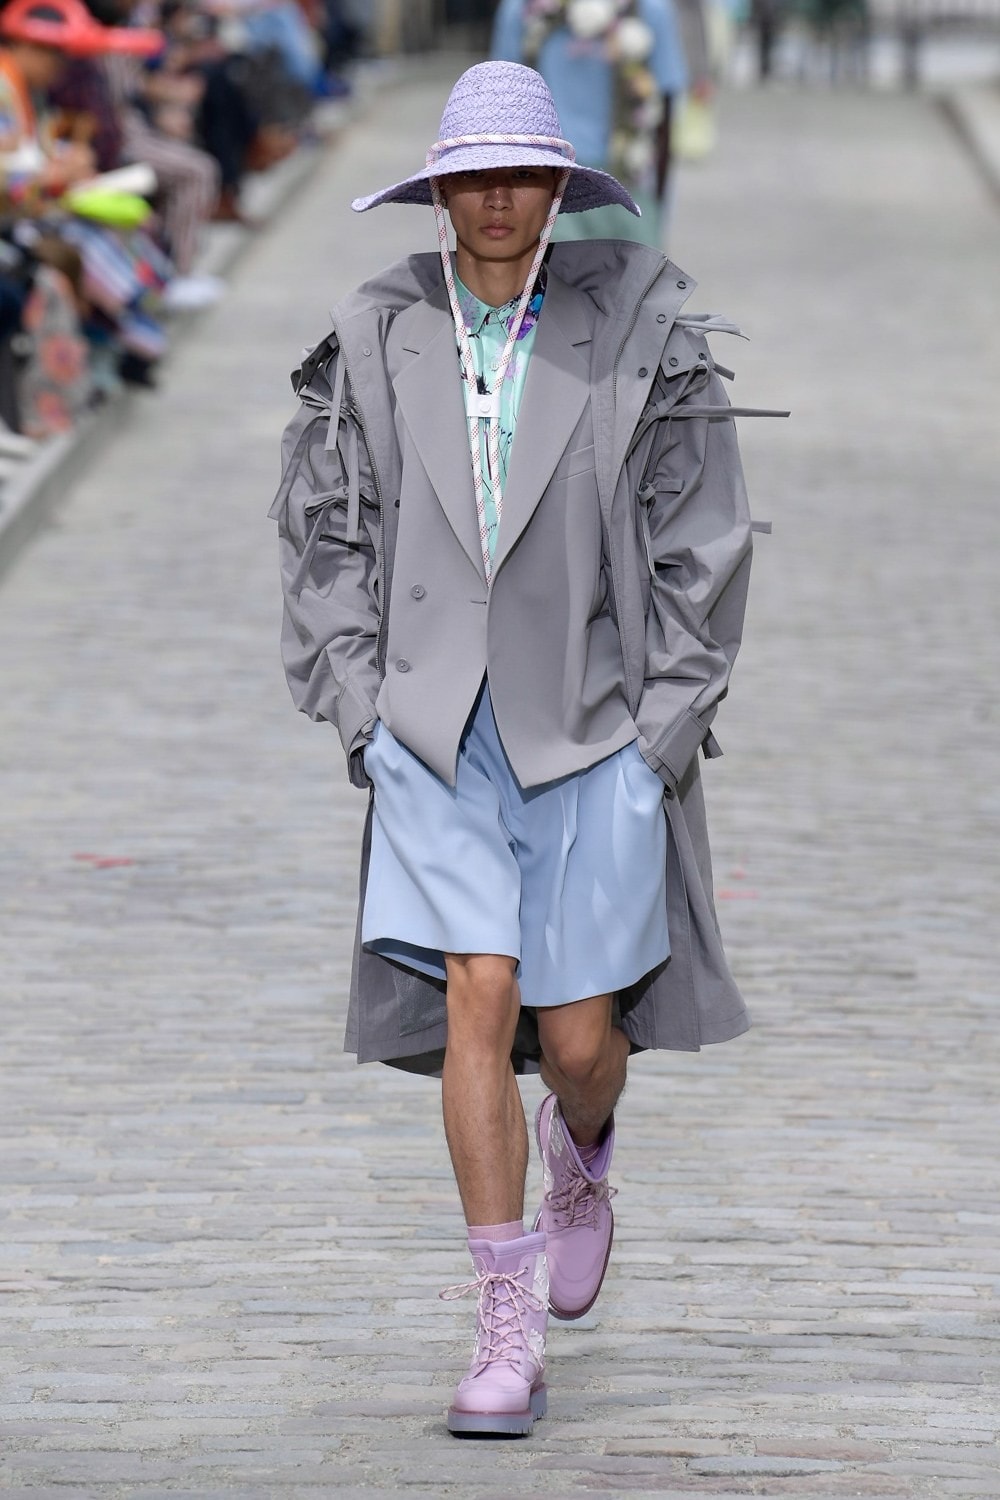 Louis Vuitton Virgil Abloh Spring Summer 2020 Paris Fashion Week Men's Show Collection Raincoat Grey Shorts Blue Shoes Purple